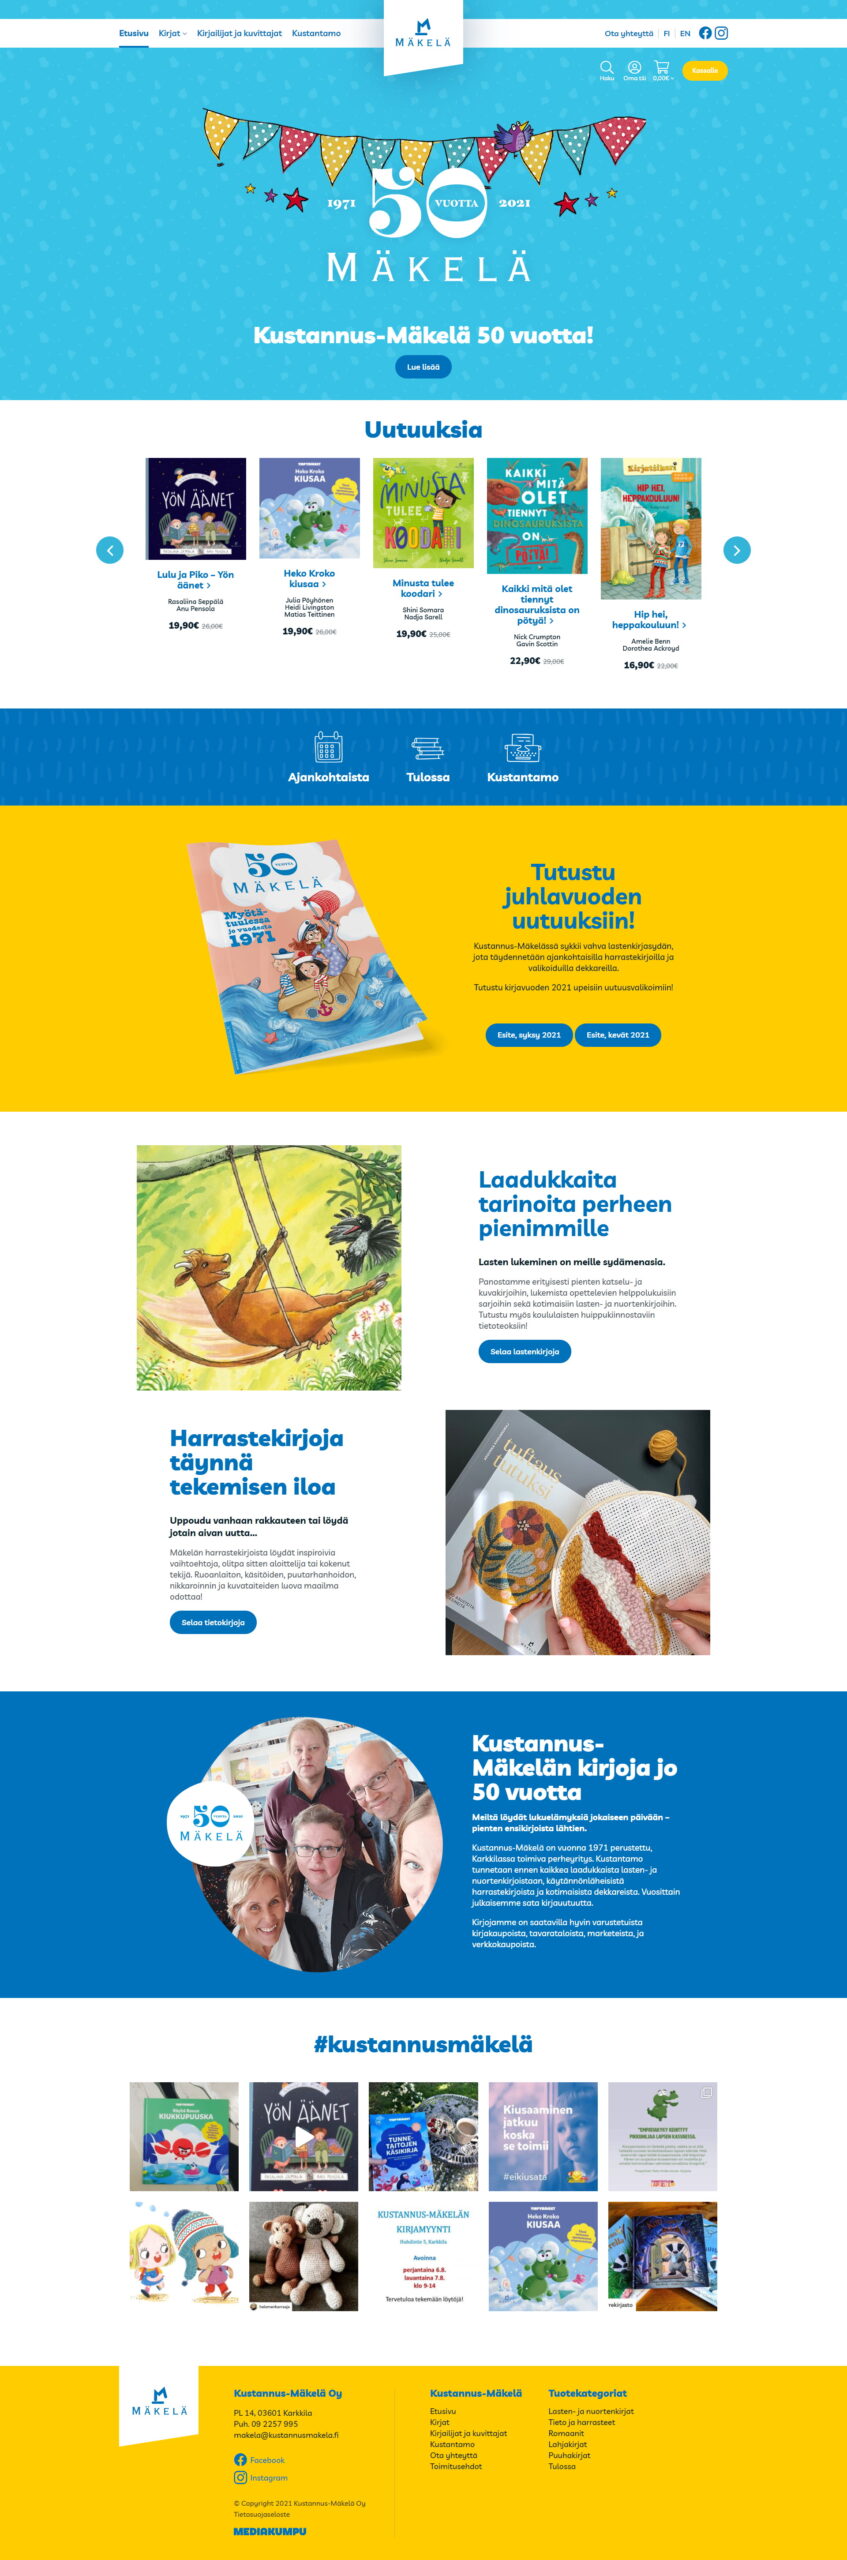 WooCommerce-verkkokauppa: Kustannus-Mäkelä kirjakauppa, etusivu - Mediakumpu